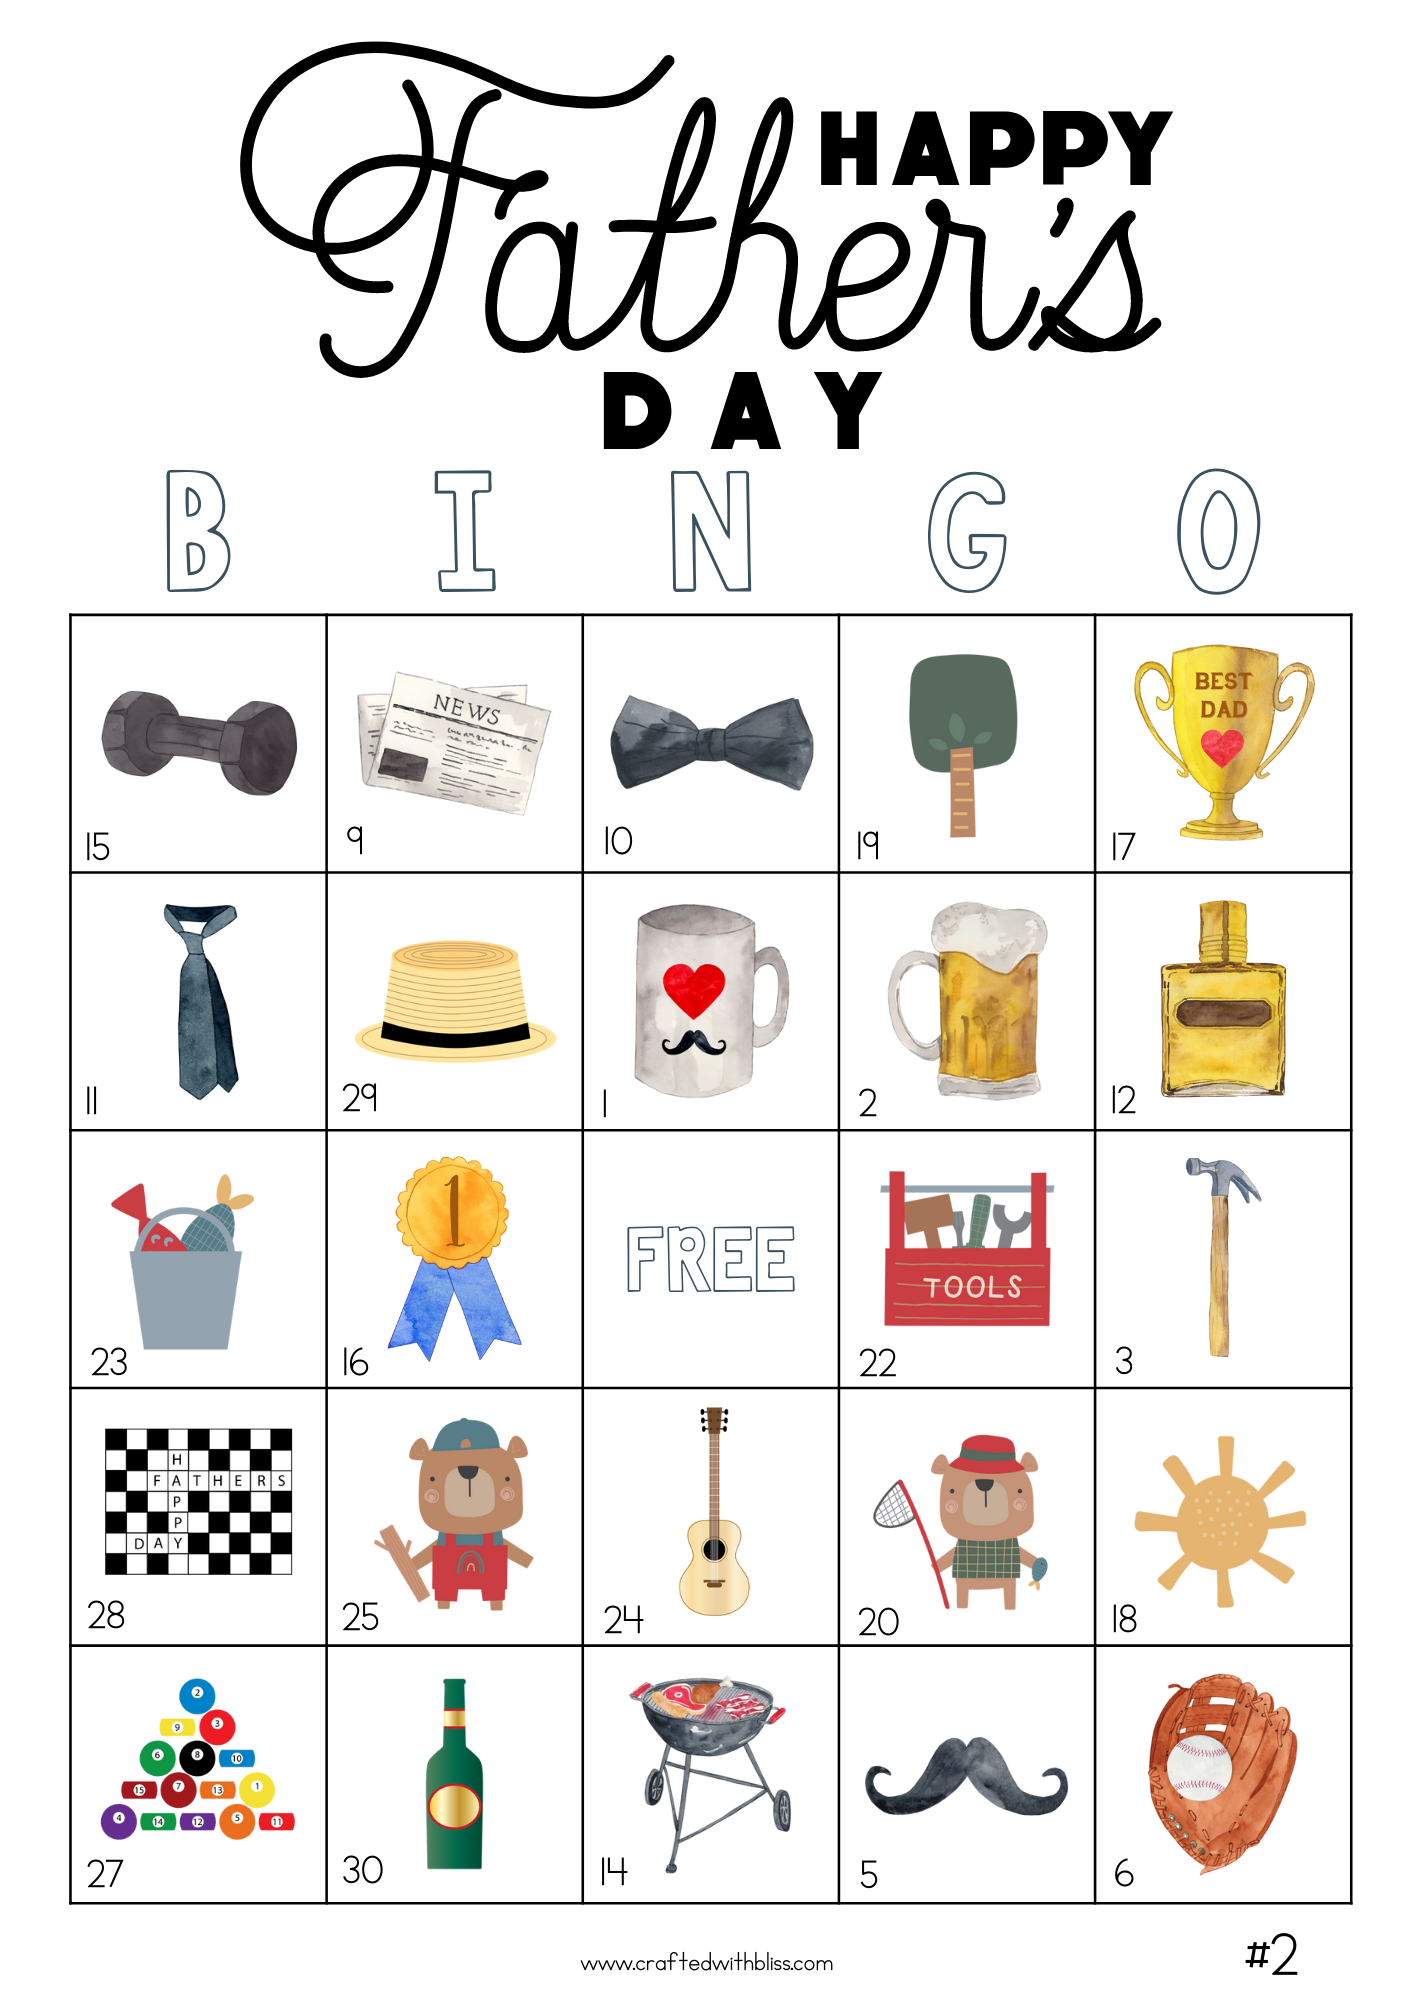 50 Father's Day Theme Bingo Cards (5x5)